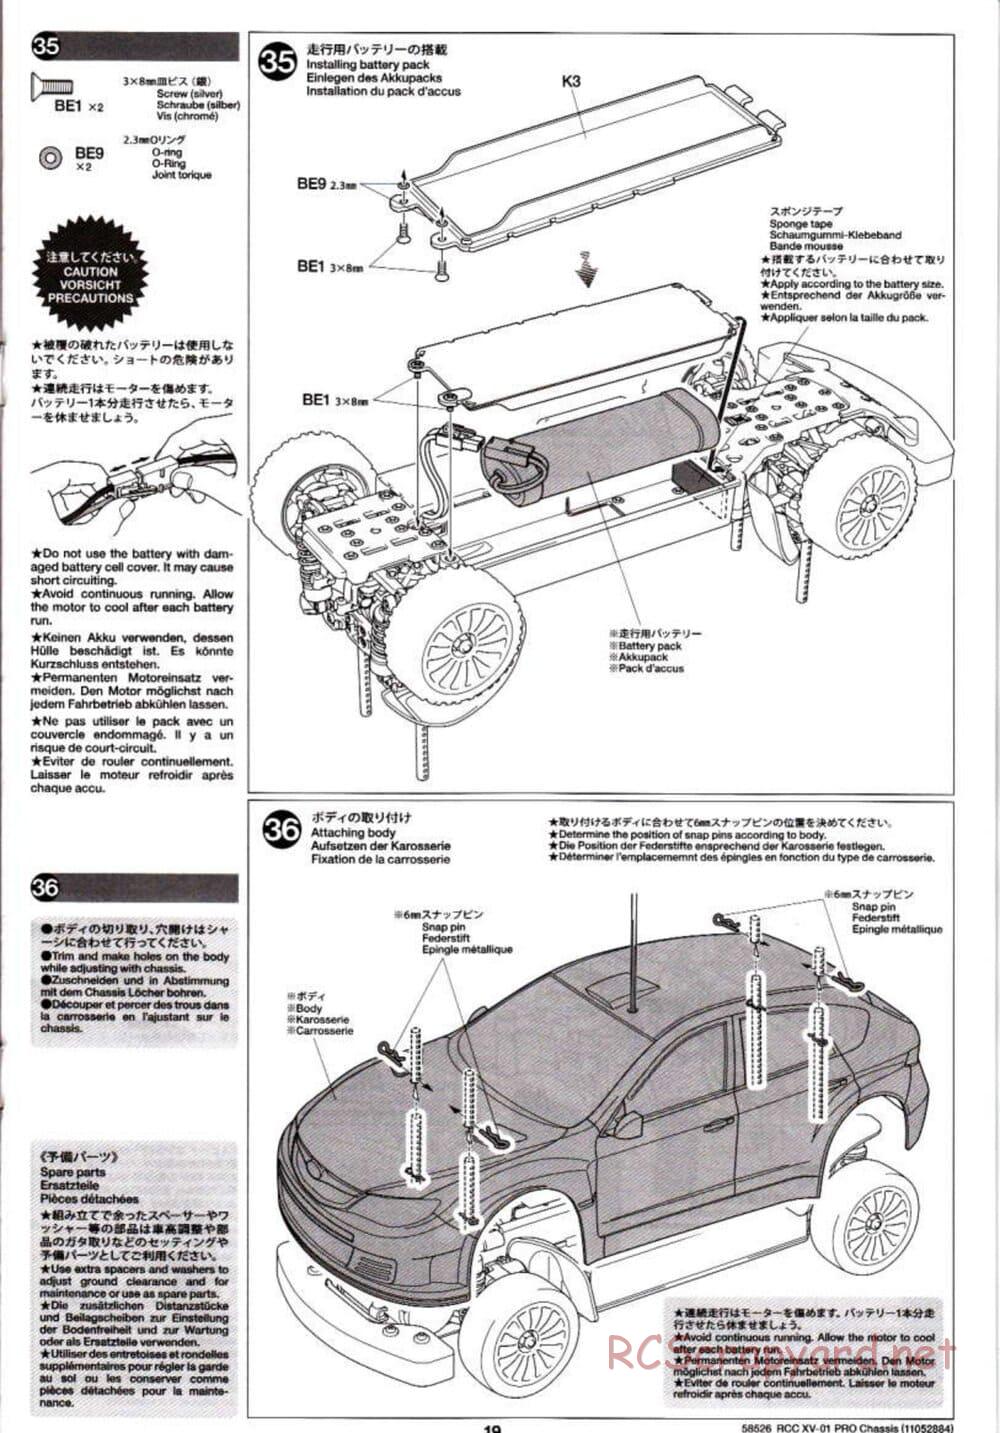 Tamiya - XV-01 PRO Chassis - Manual - Page 19